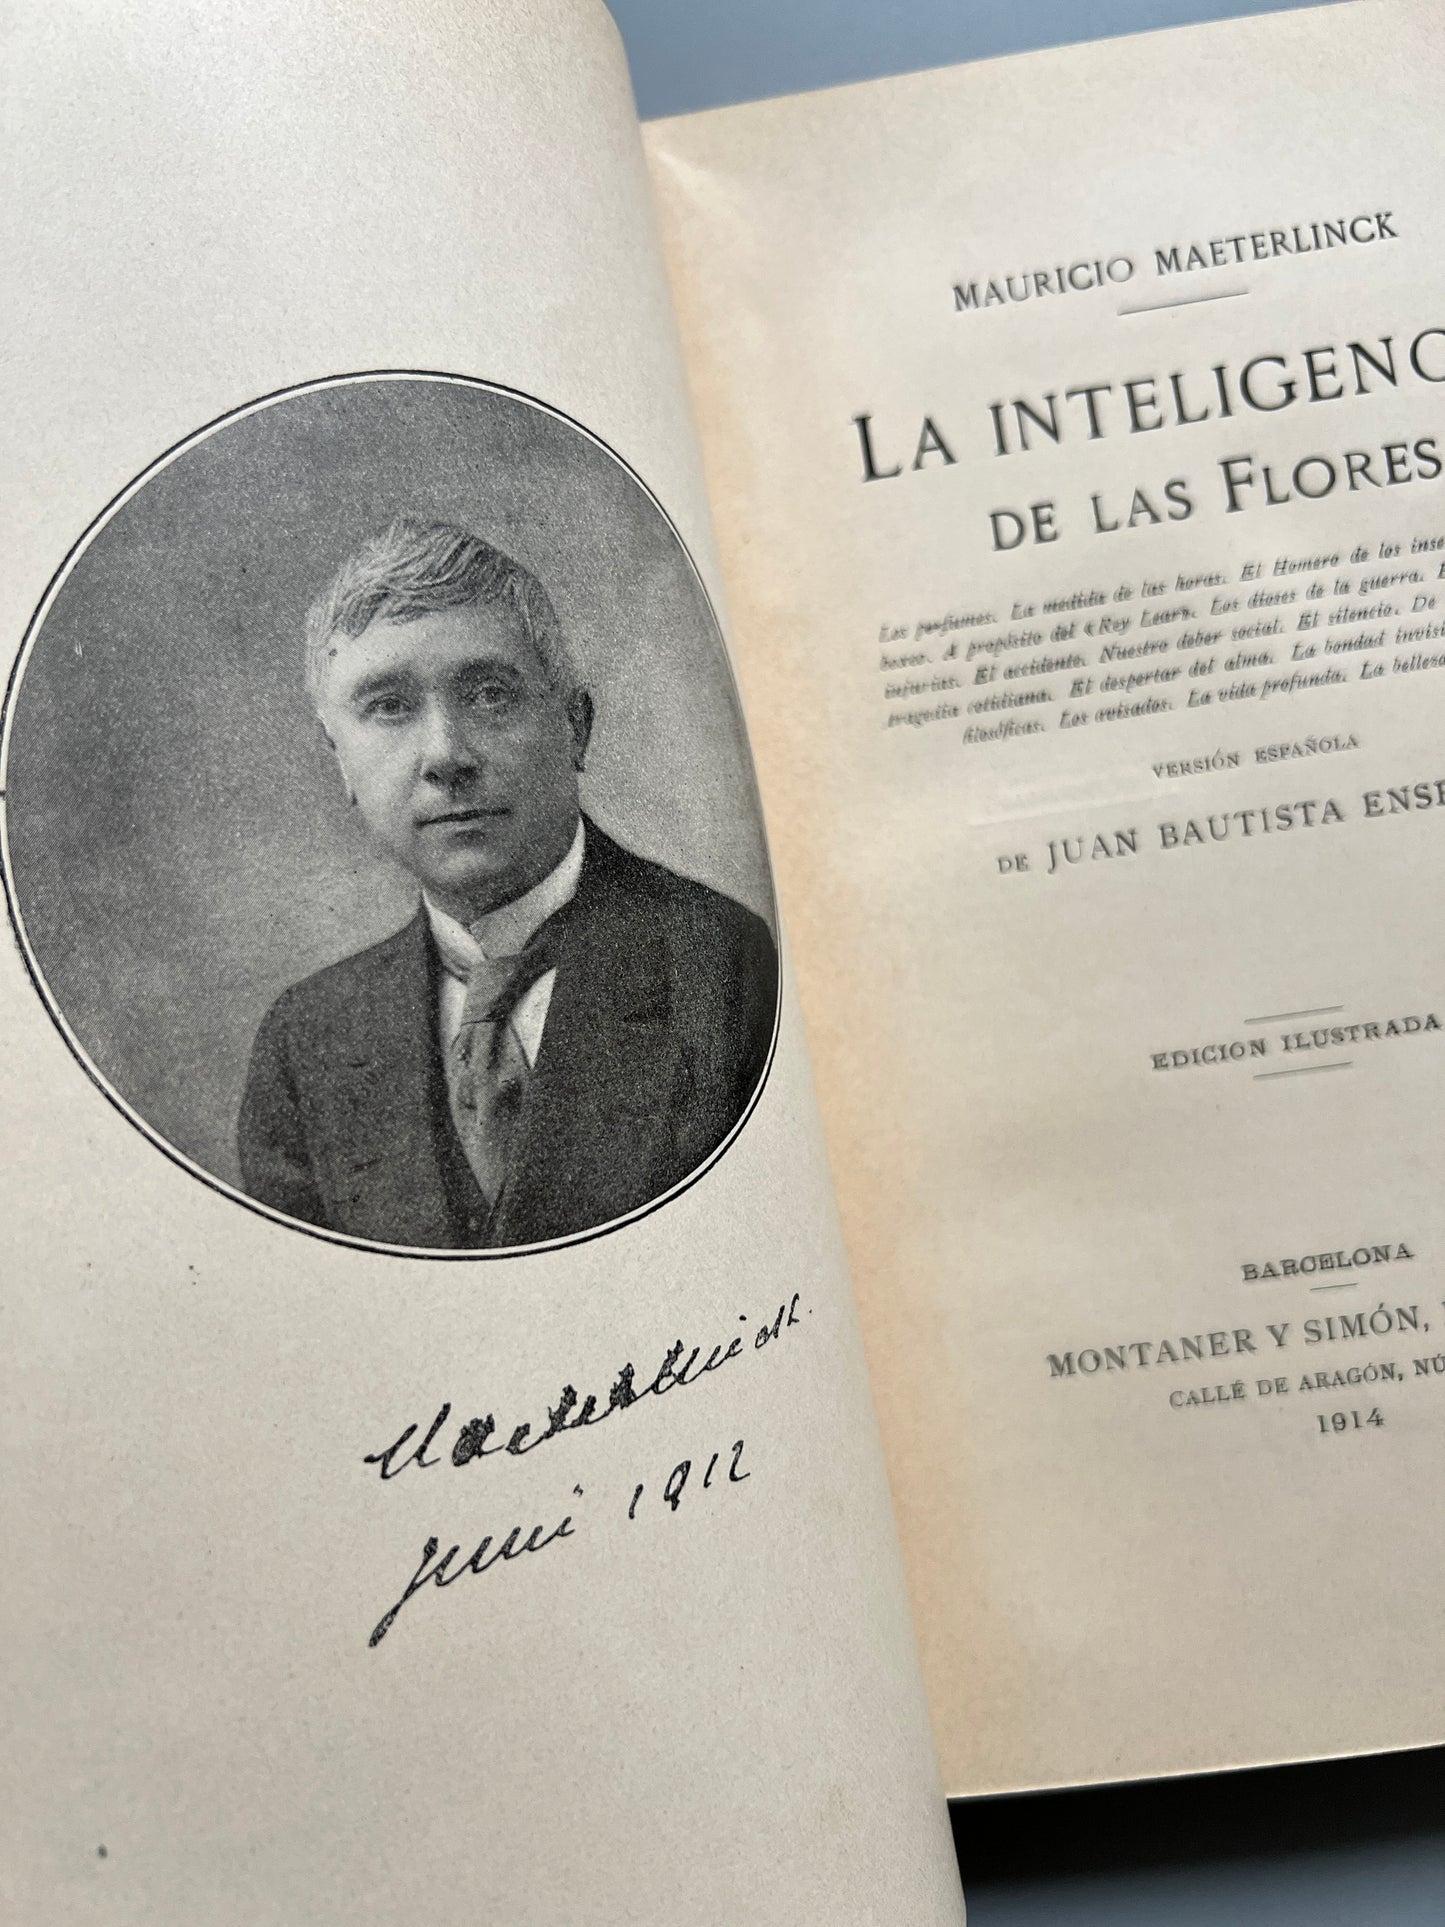 La inteligencia de las flores, Mauricio Maeterlink - Montaner y Simón, 1914